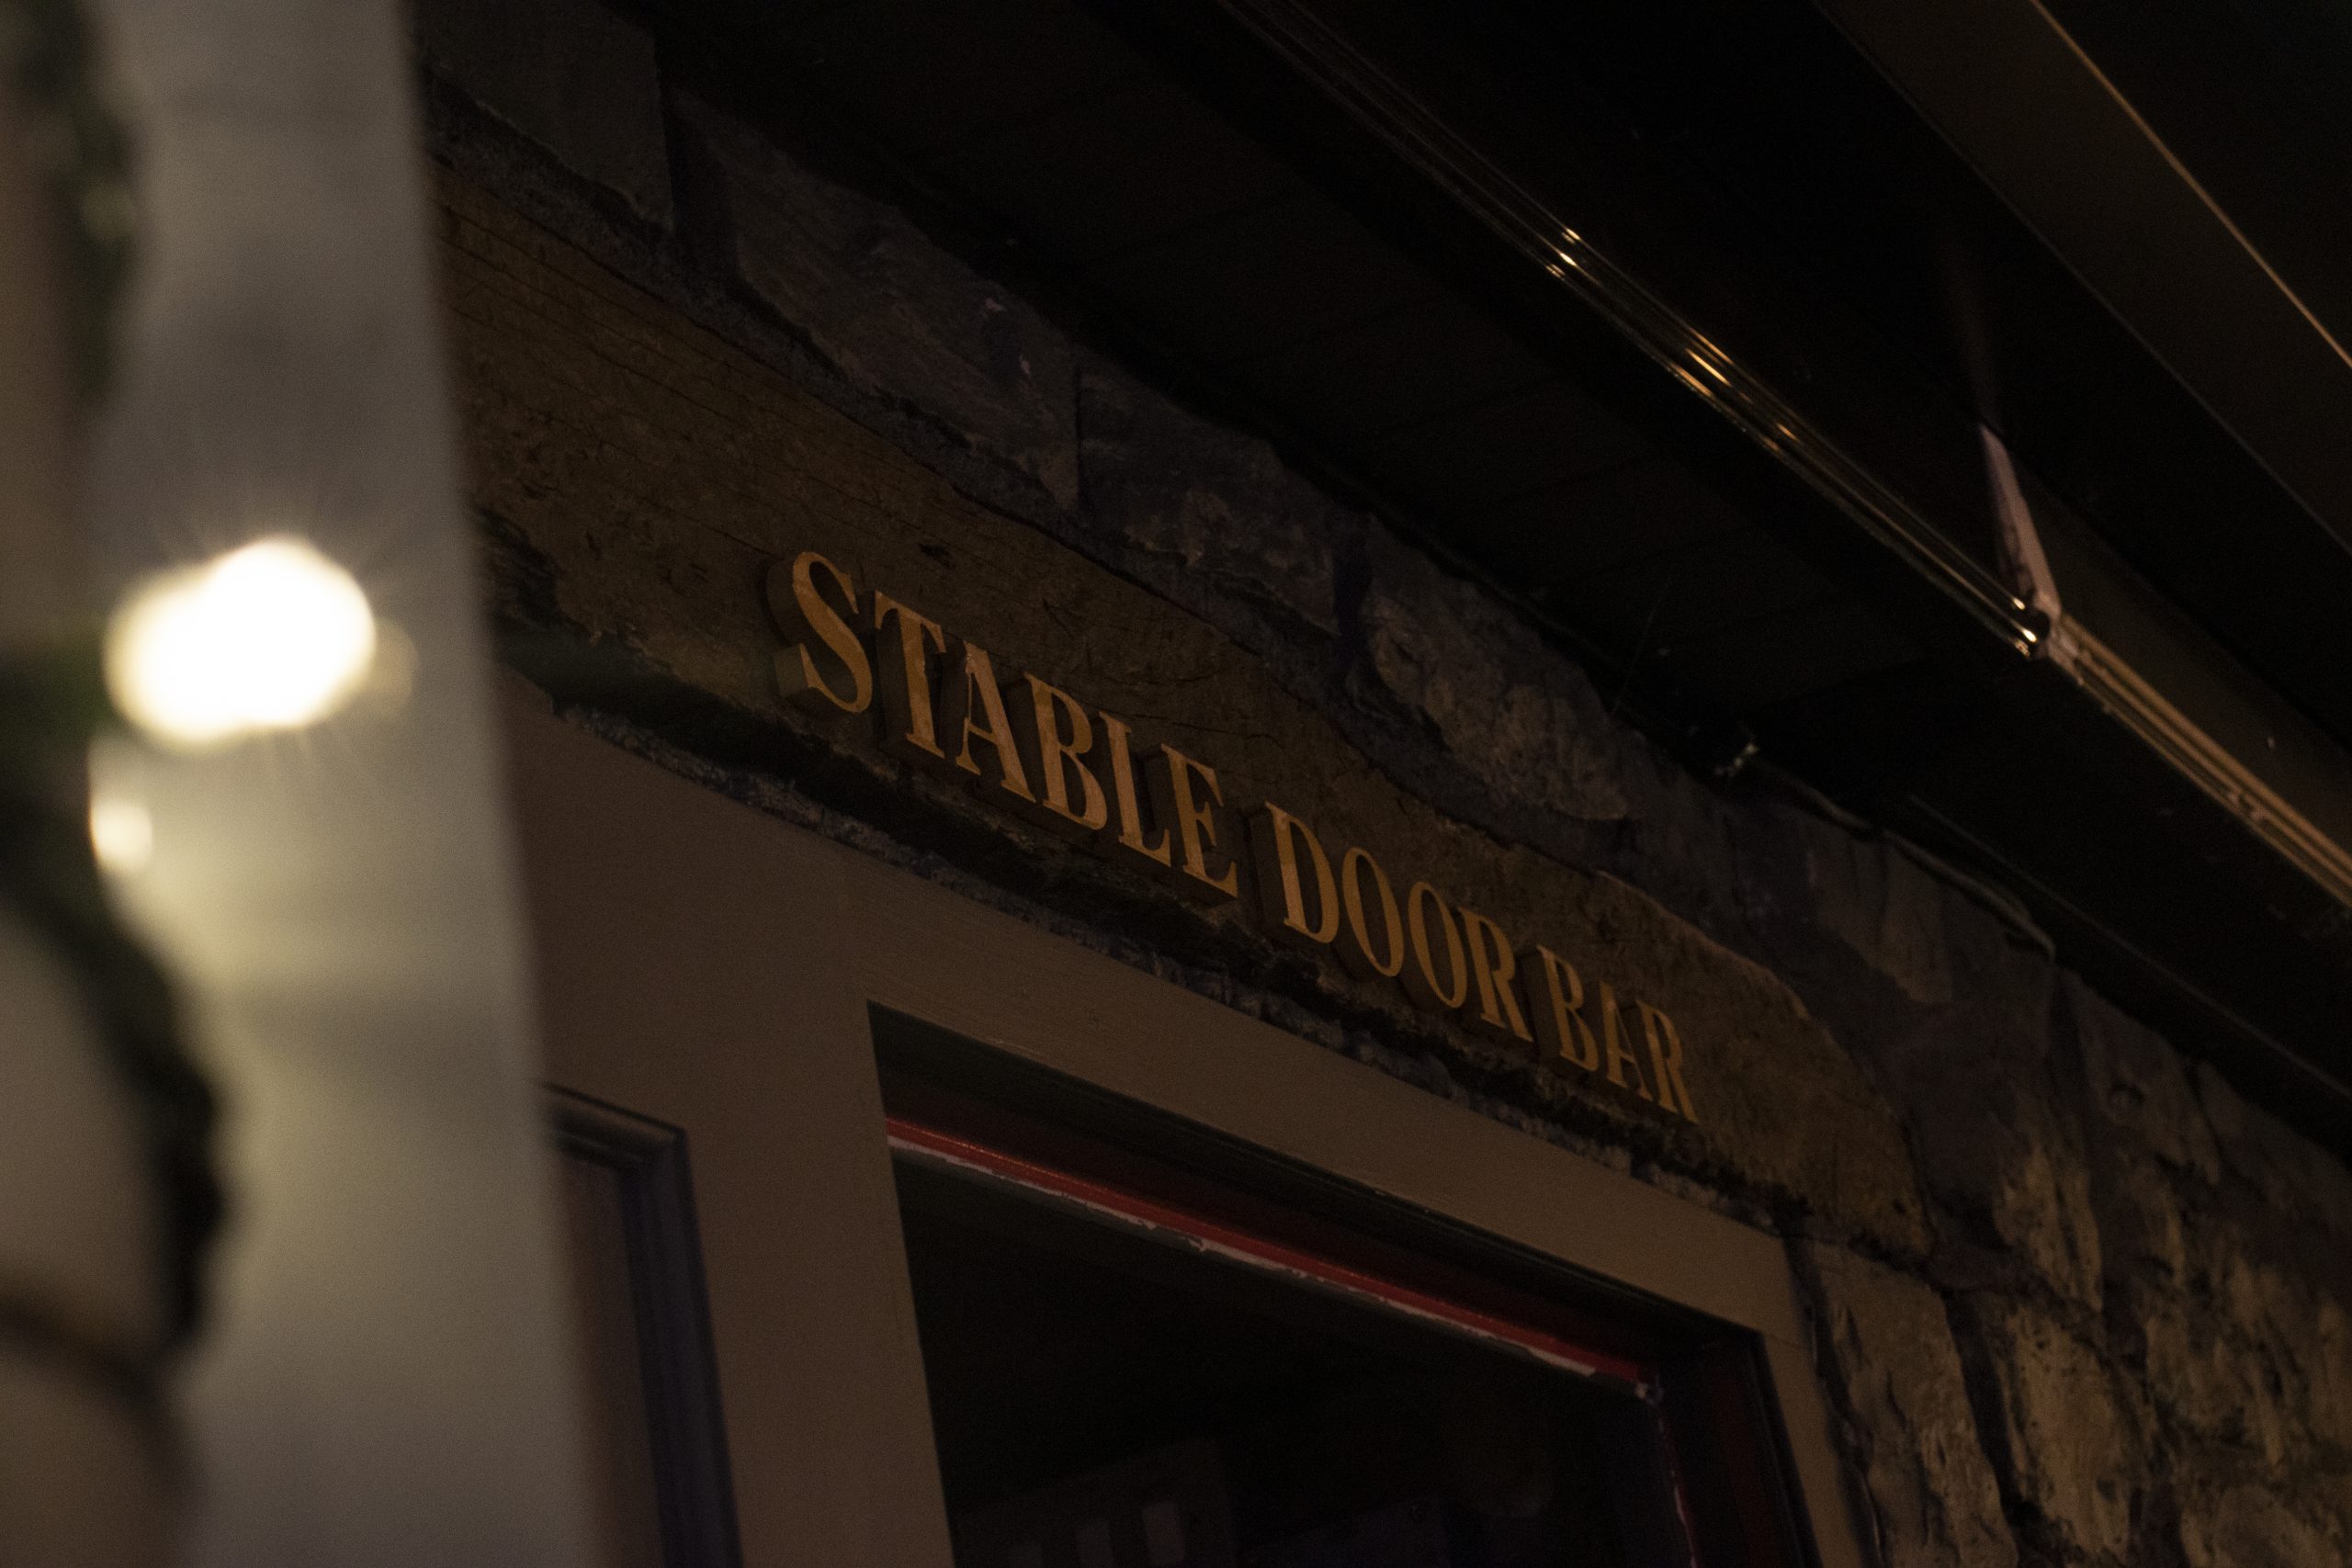 Stable bar door